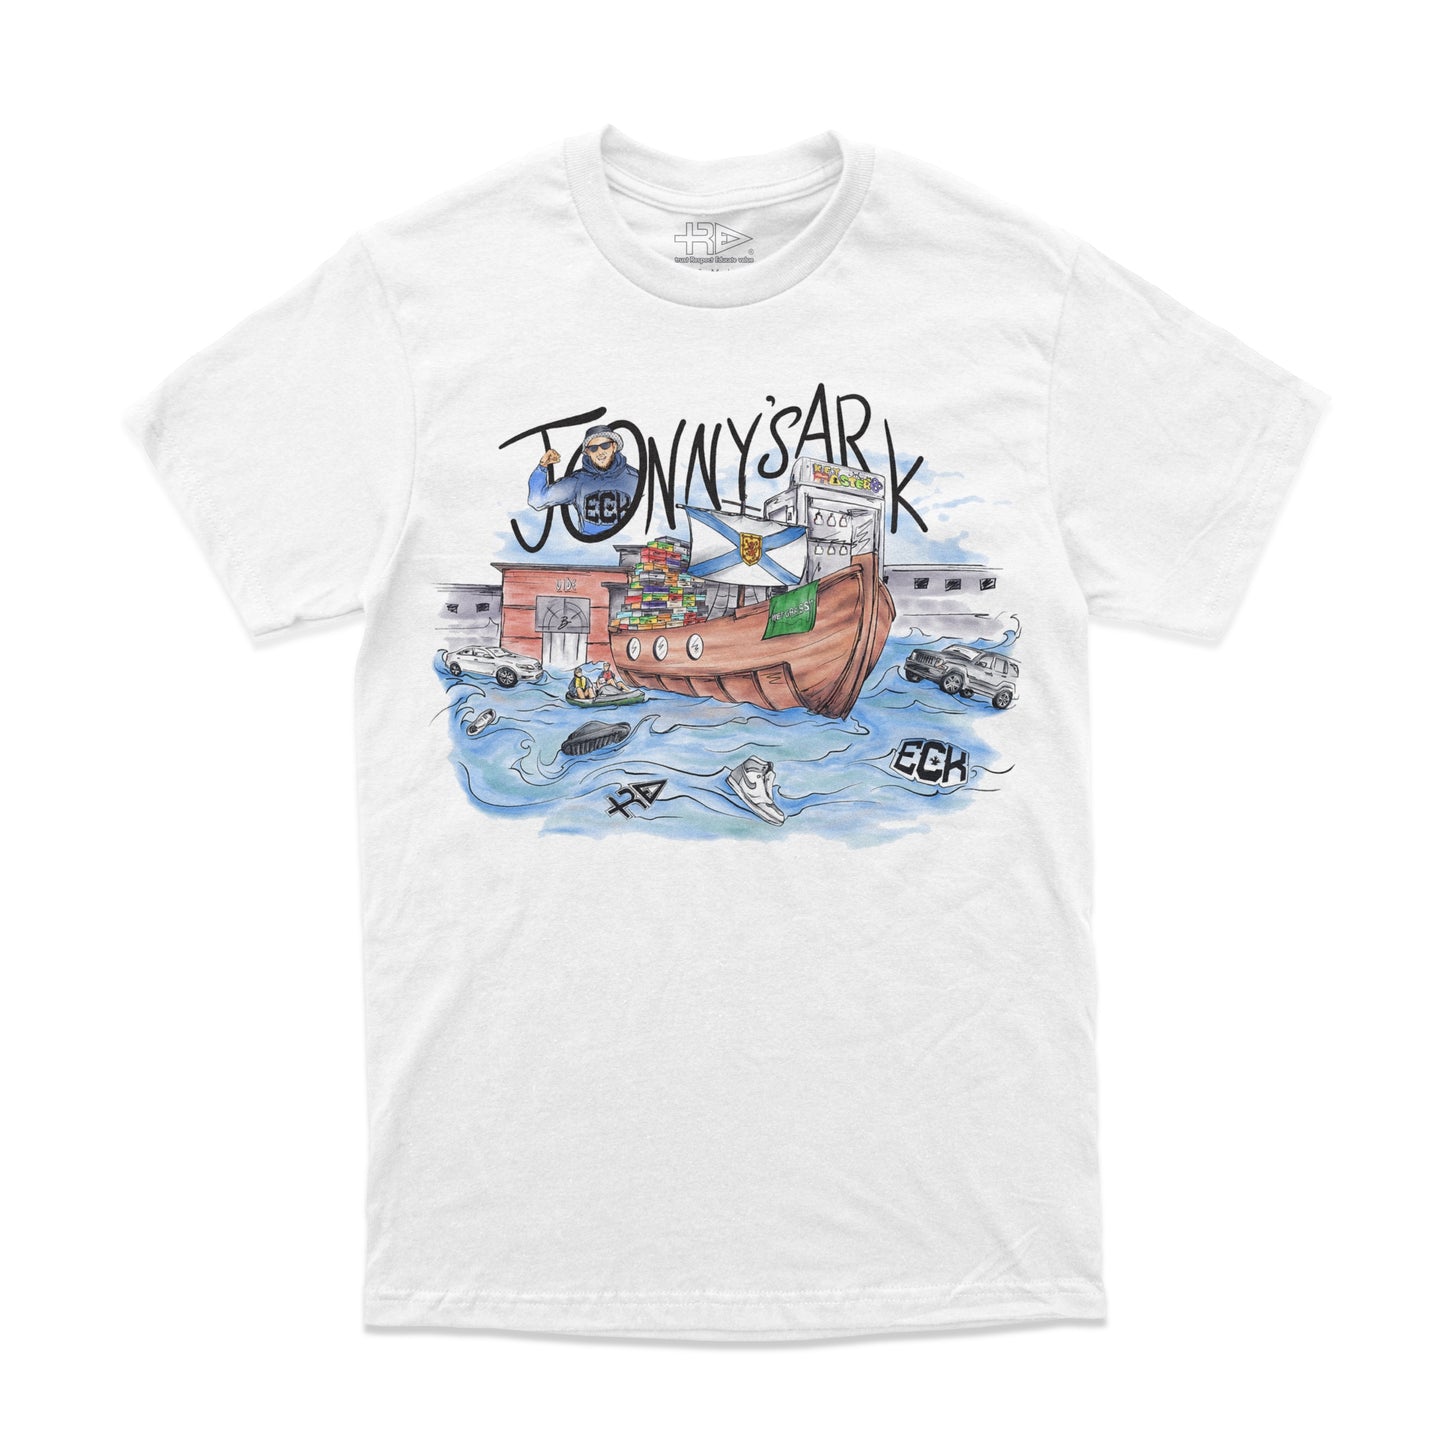 Jonny’s Ark T-Shirt